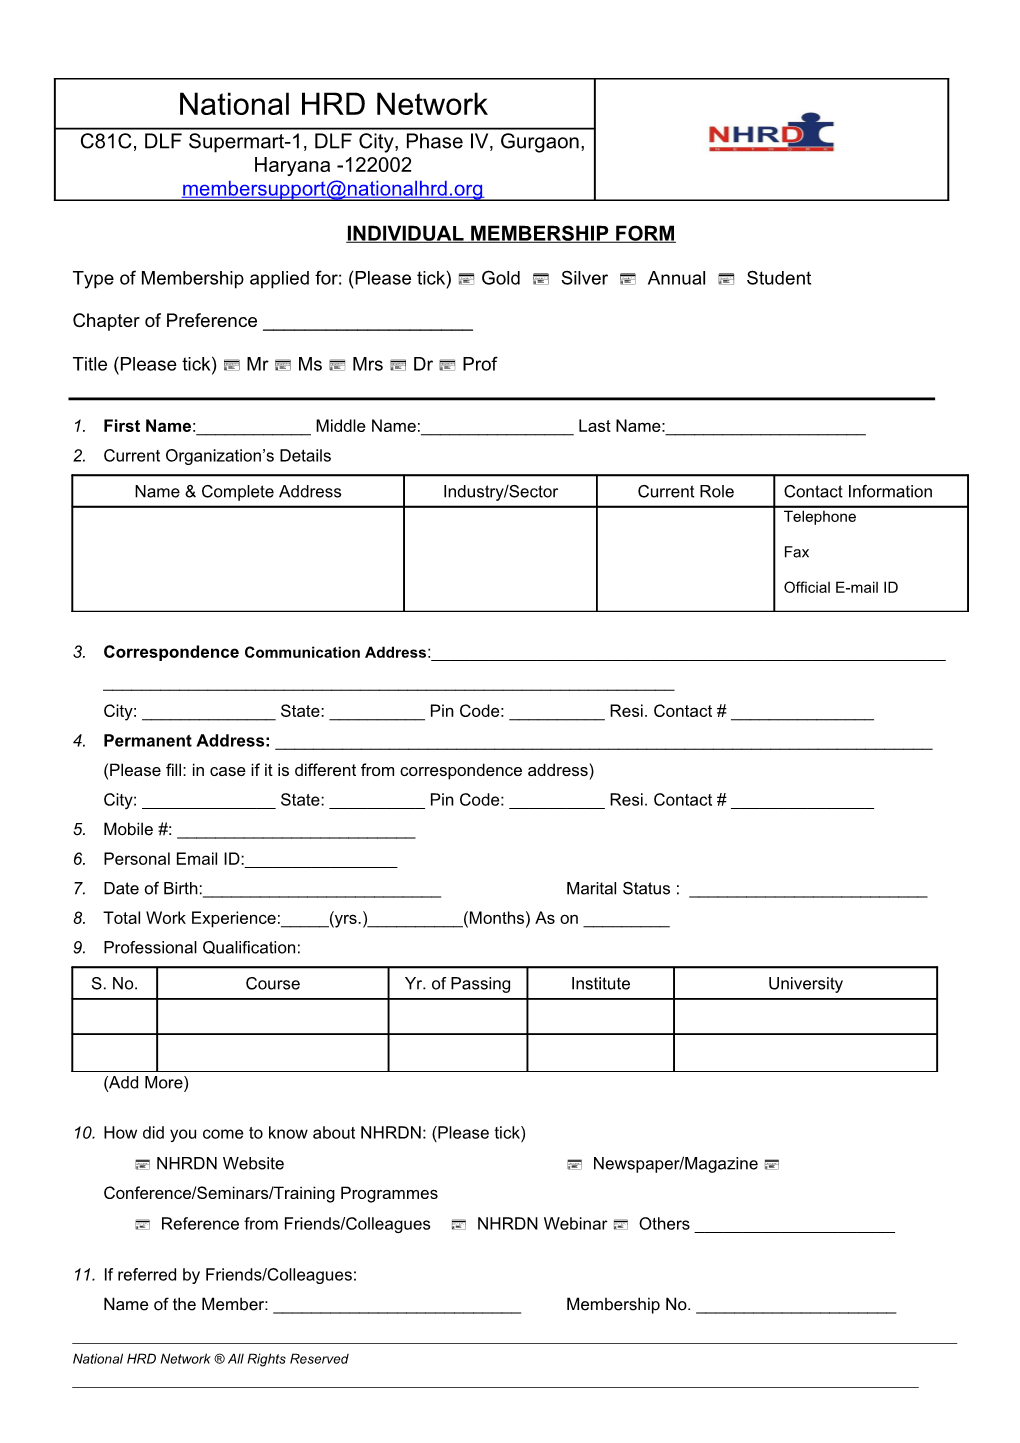 Individual Membership Form